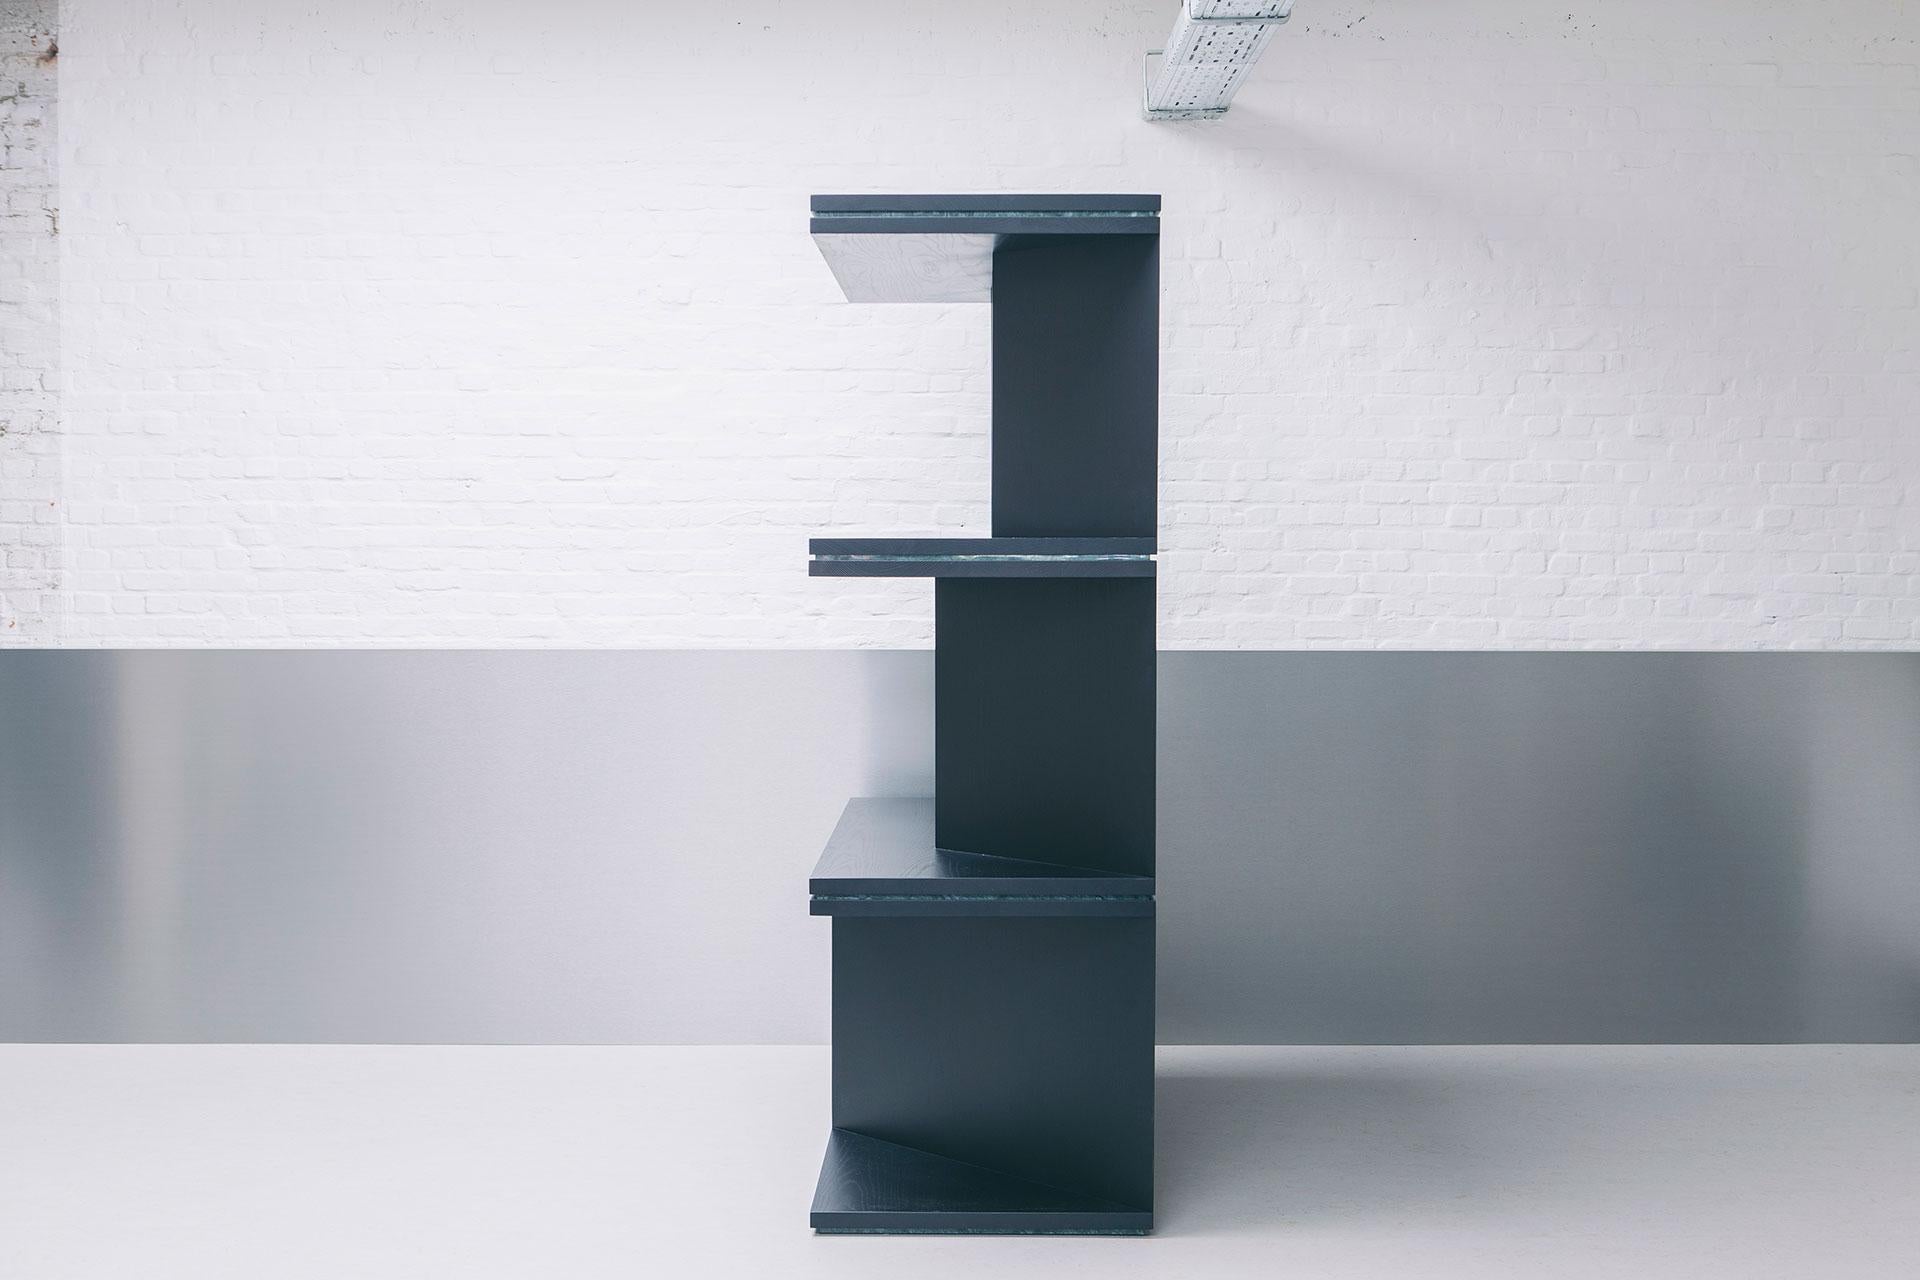 Oblique 01.1, ein Raumteiler oder Bücherregal, das es versteht, jeden Raum zu unterteilen, ohne dabei das Gefühl von Großzügigkeit zu verlieren. Inspiriert von Le Corbusiers Turm der Schatten, machen die schrägen Unterteilungen dieses Bücherregal